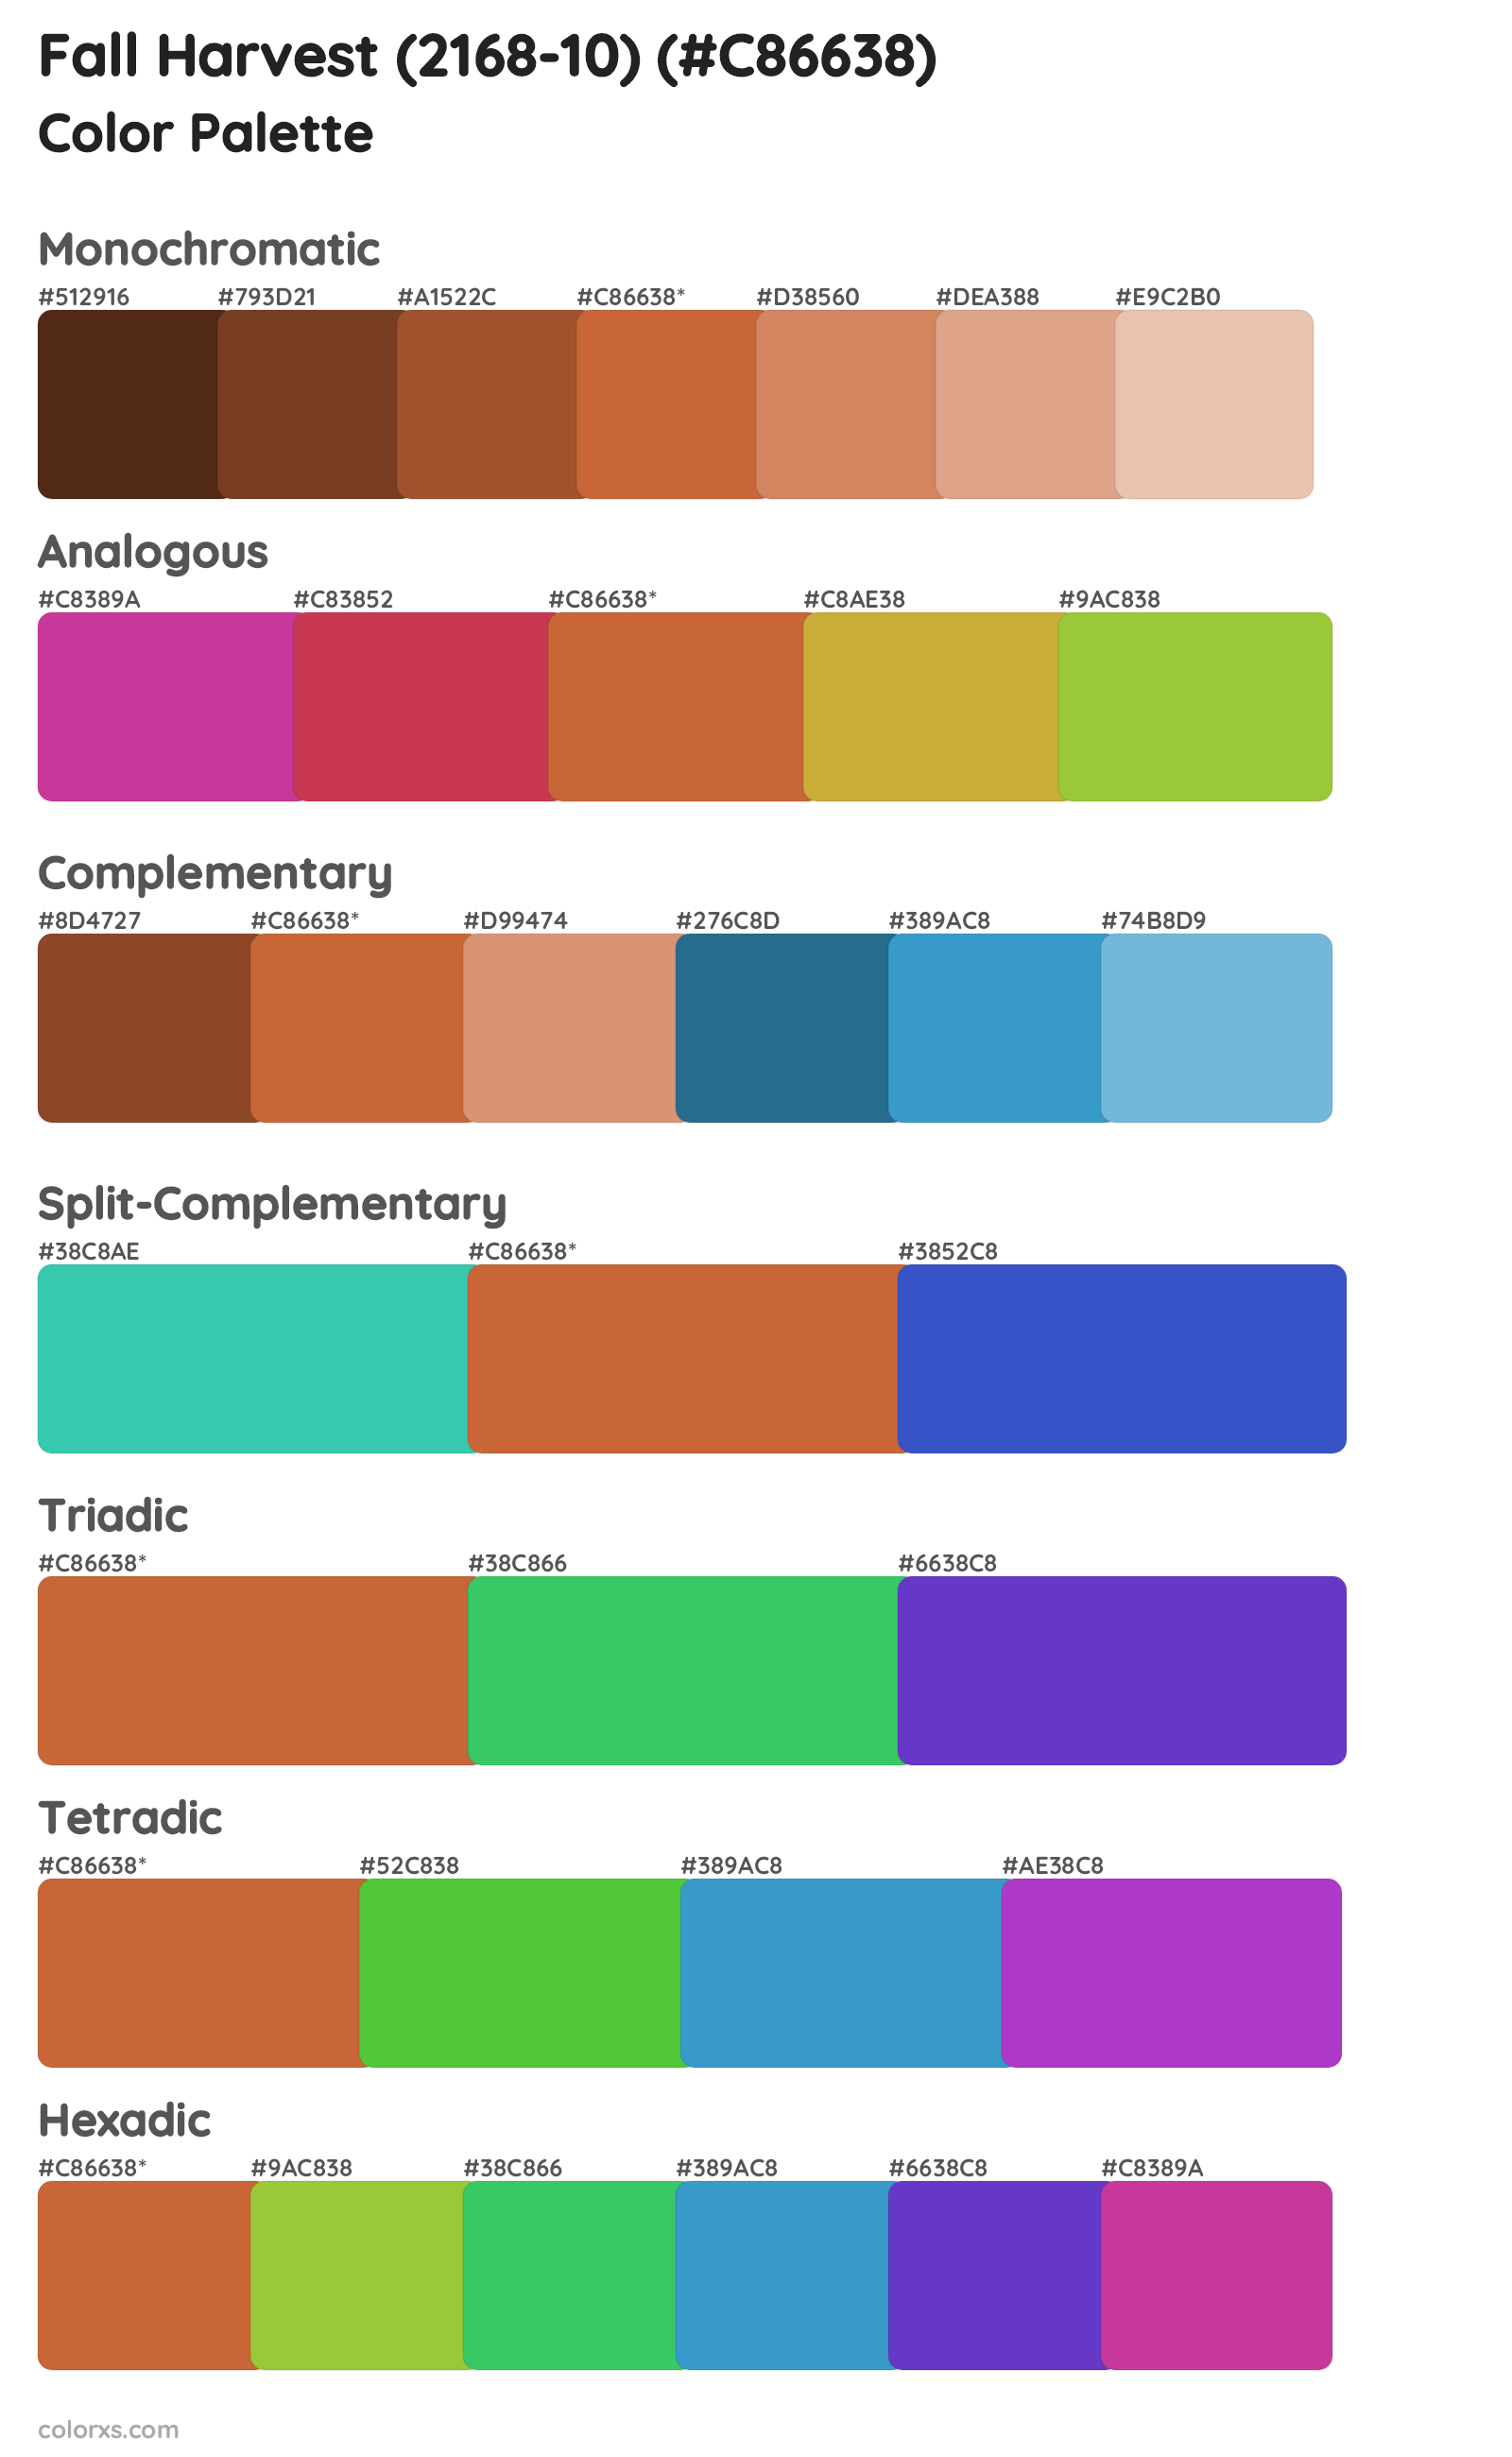 Fall Harvest (2168-10) Color Scheme Palettes